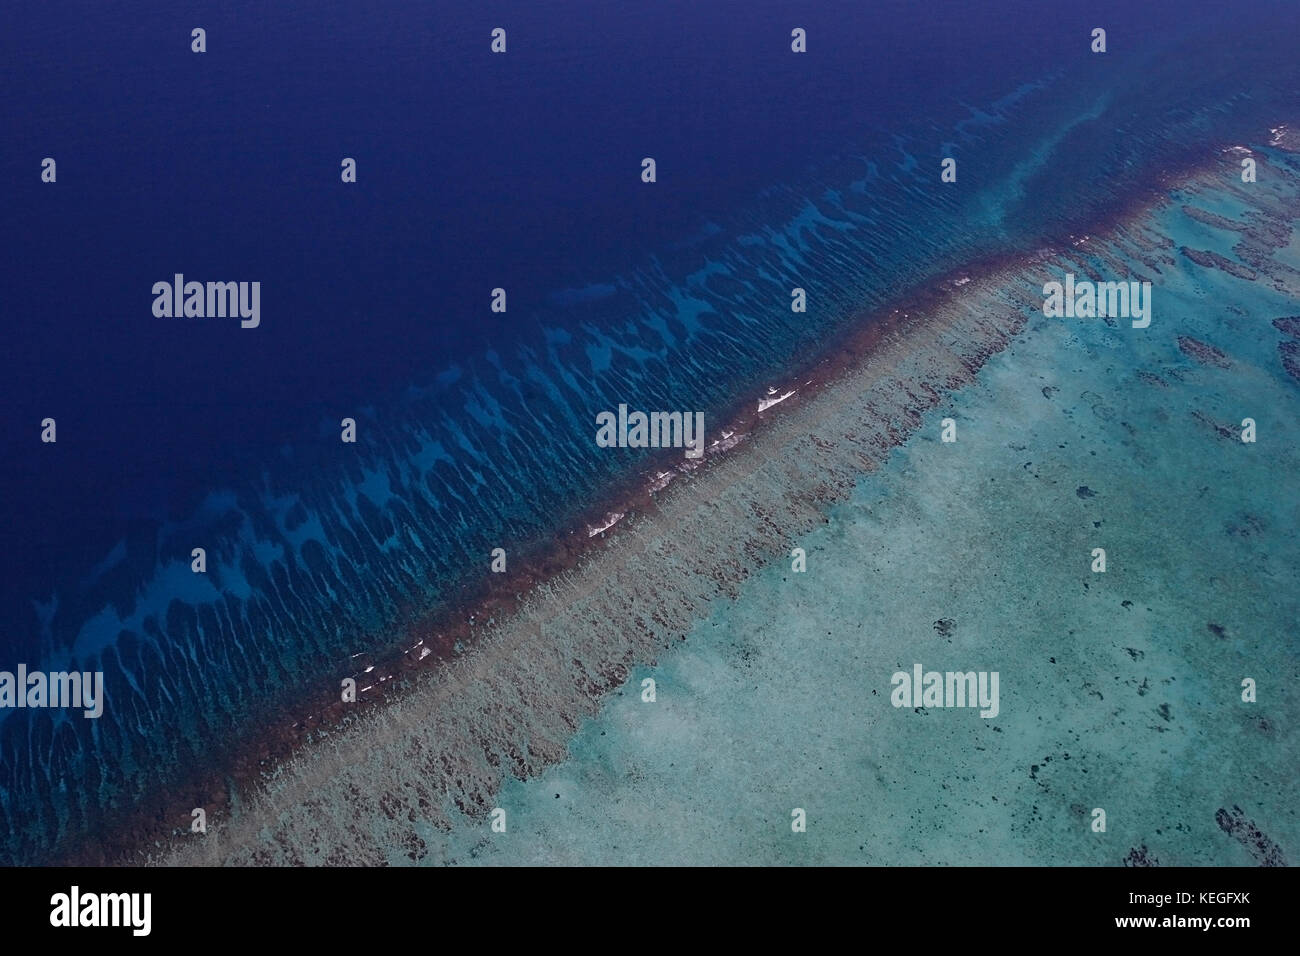 Vista aerea della barriera corallina del Belize meridionale, vicino allo Spit Gladden, che mostra le formazioni coralline di speroni e scanalature all'esterno della cresta della barriera corallina Foto Stock